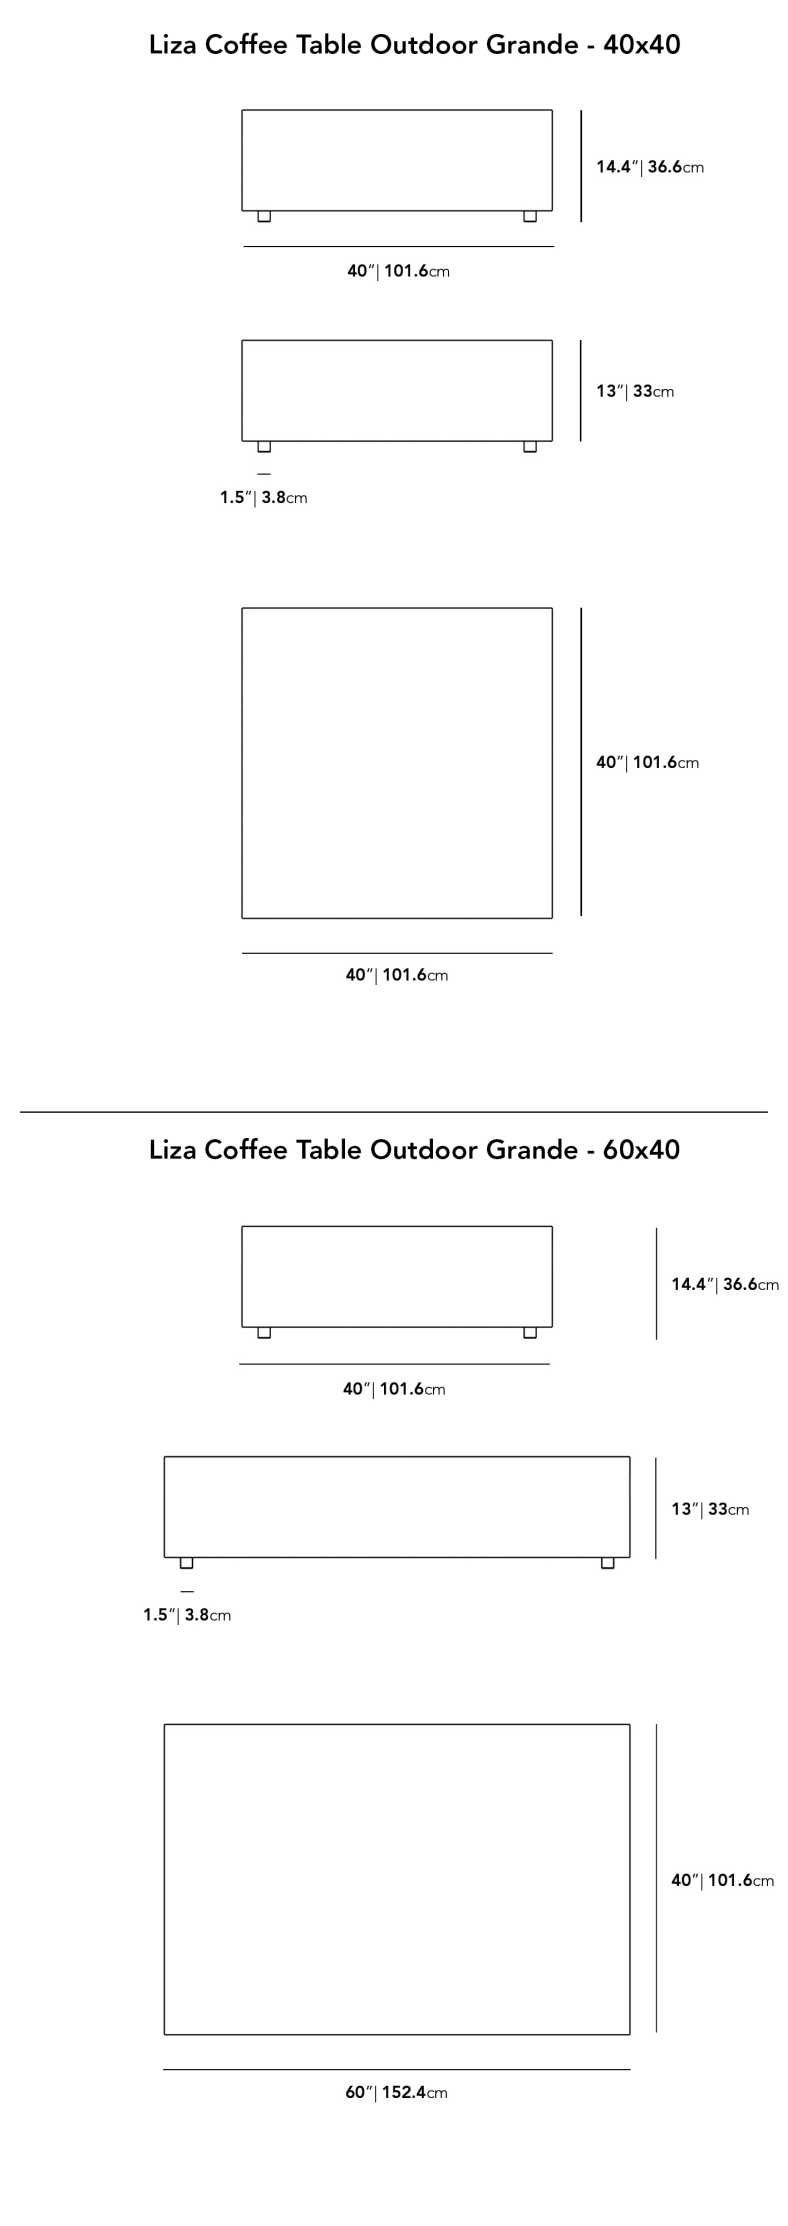 Dimensions for Liza Coffee Table Grande 2022